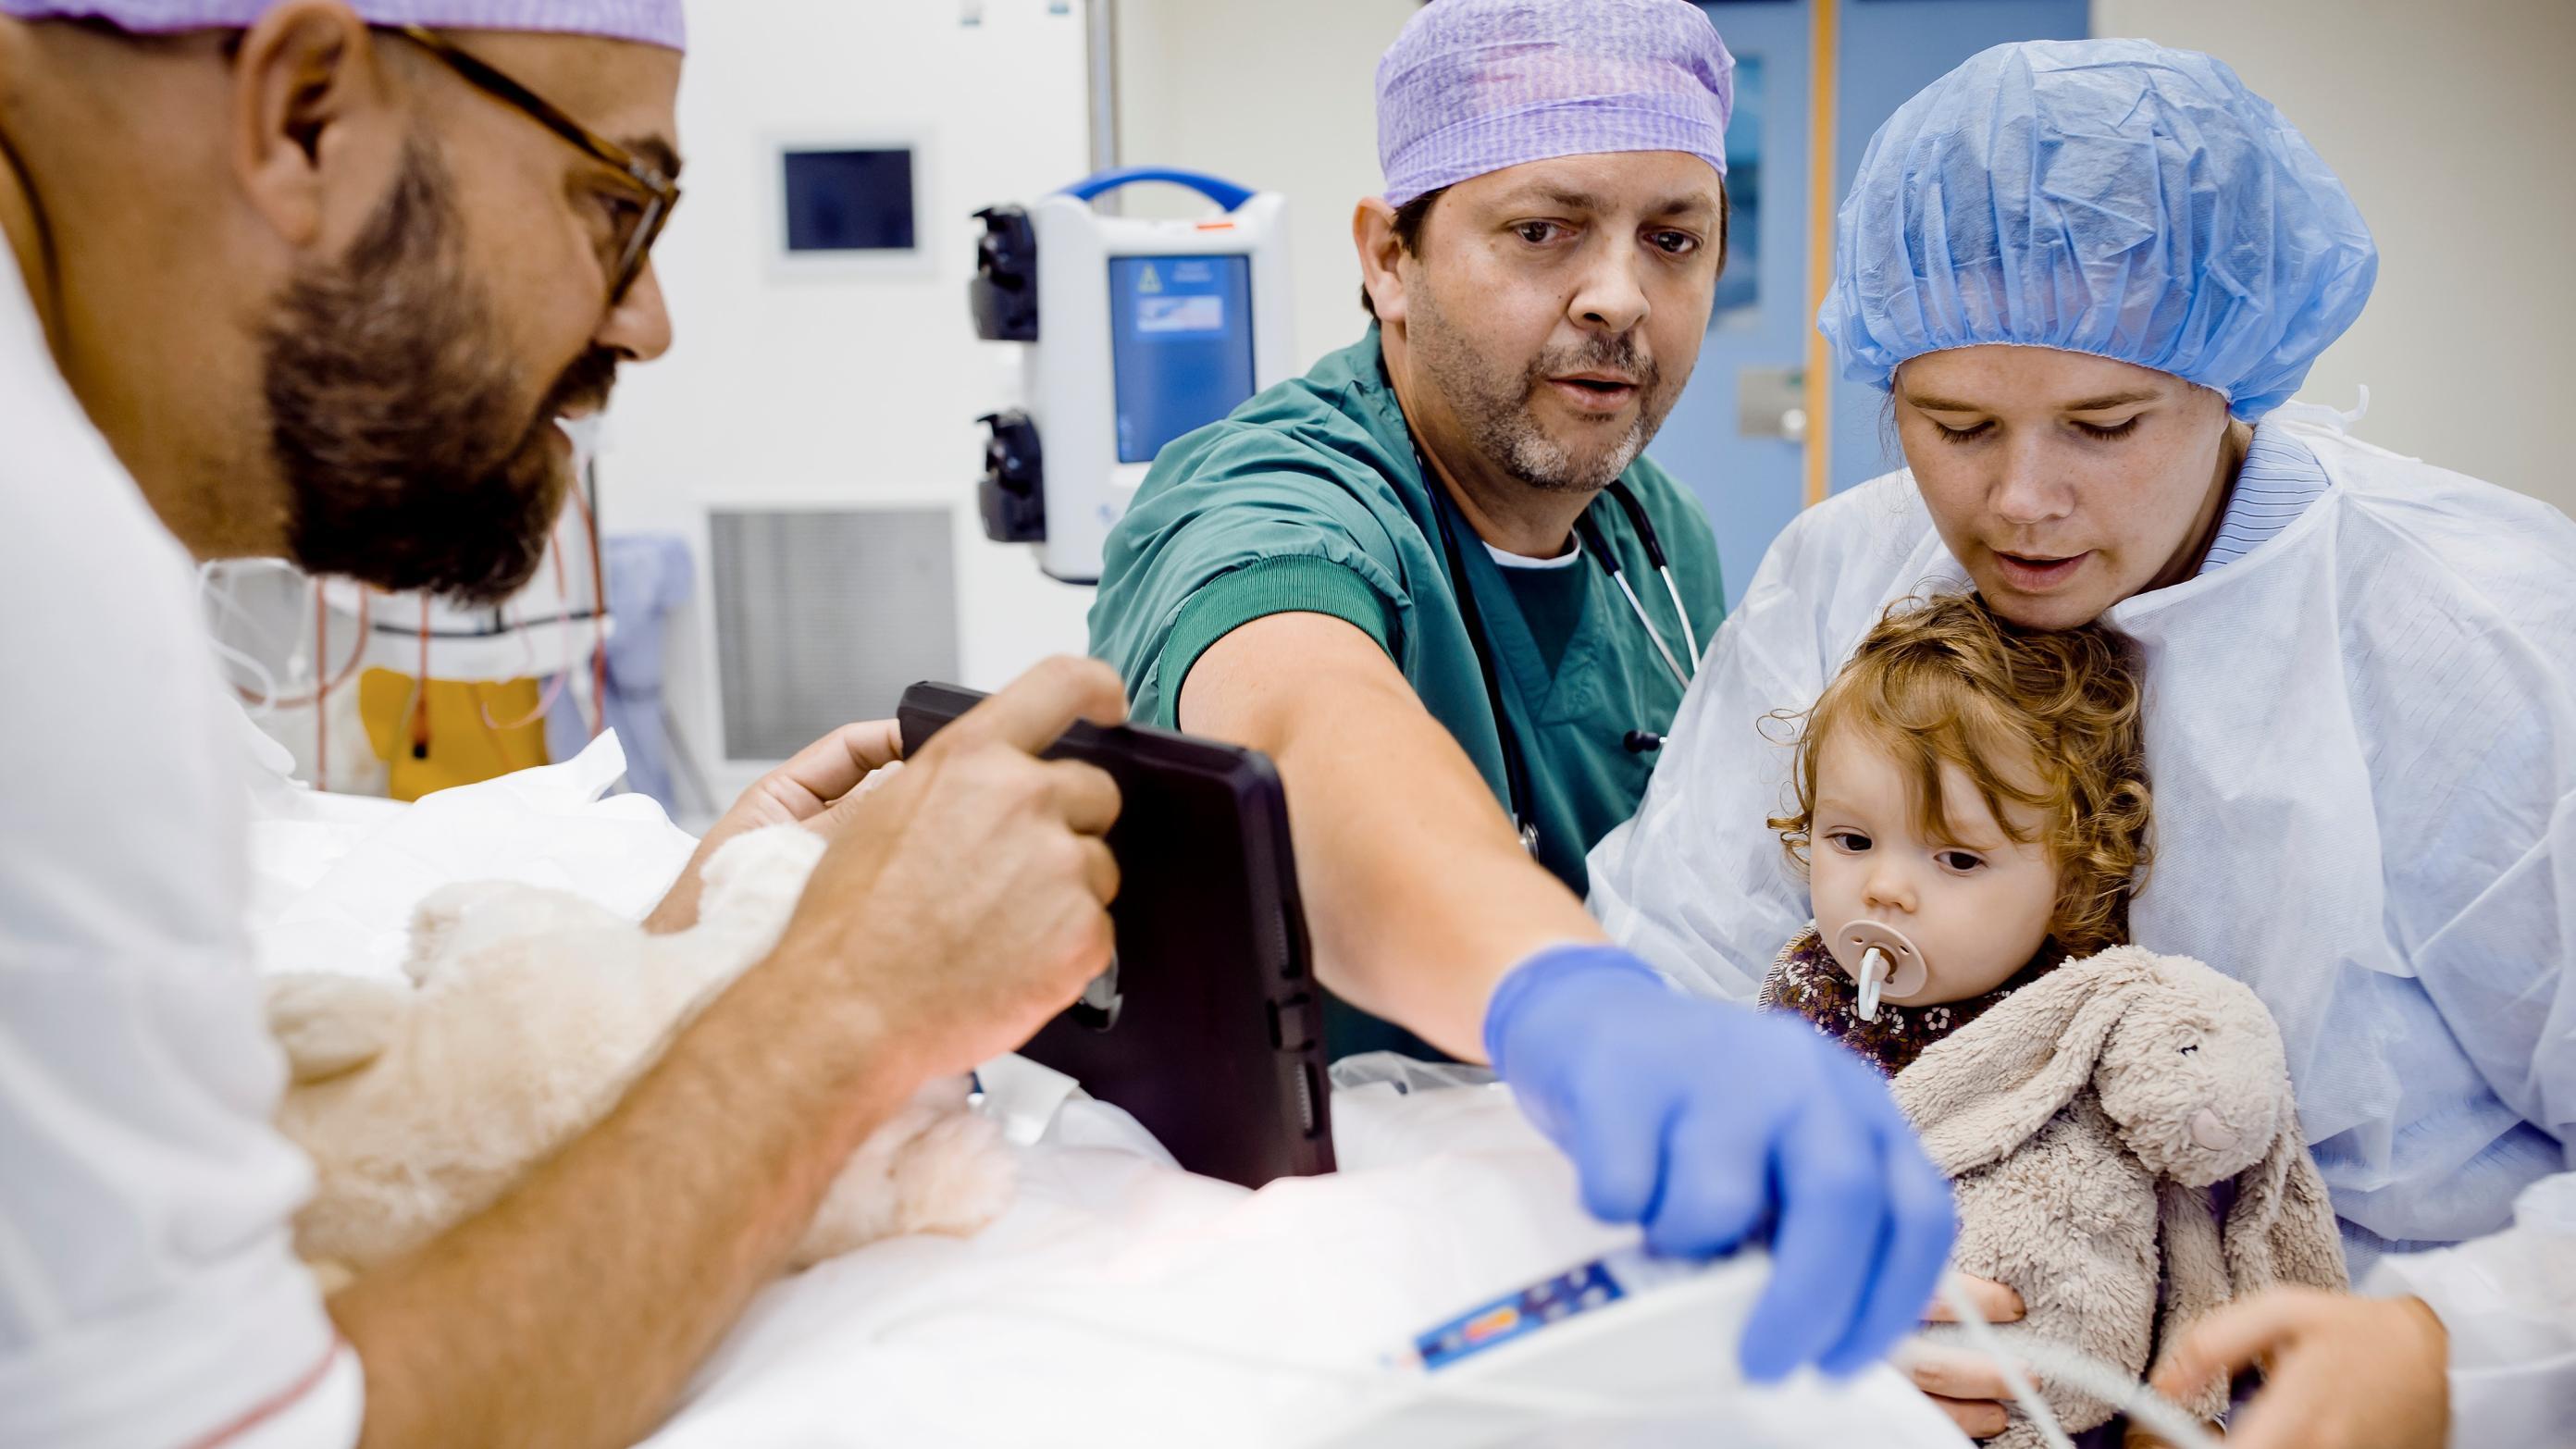 Børneanæstesilæge Morten Bøttger og operationsteamet er ved at gøre en patient klar til en mindre operation. Foto: Claus Boesen 